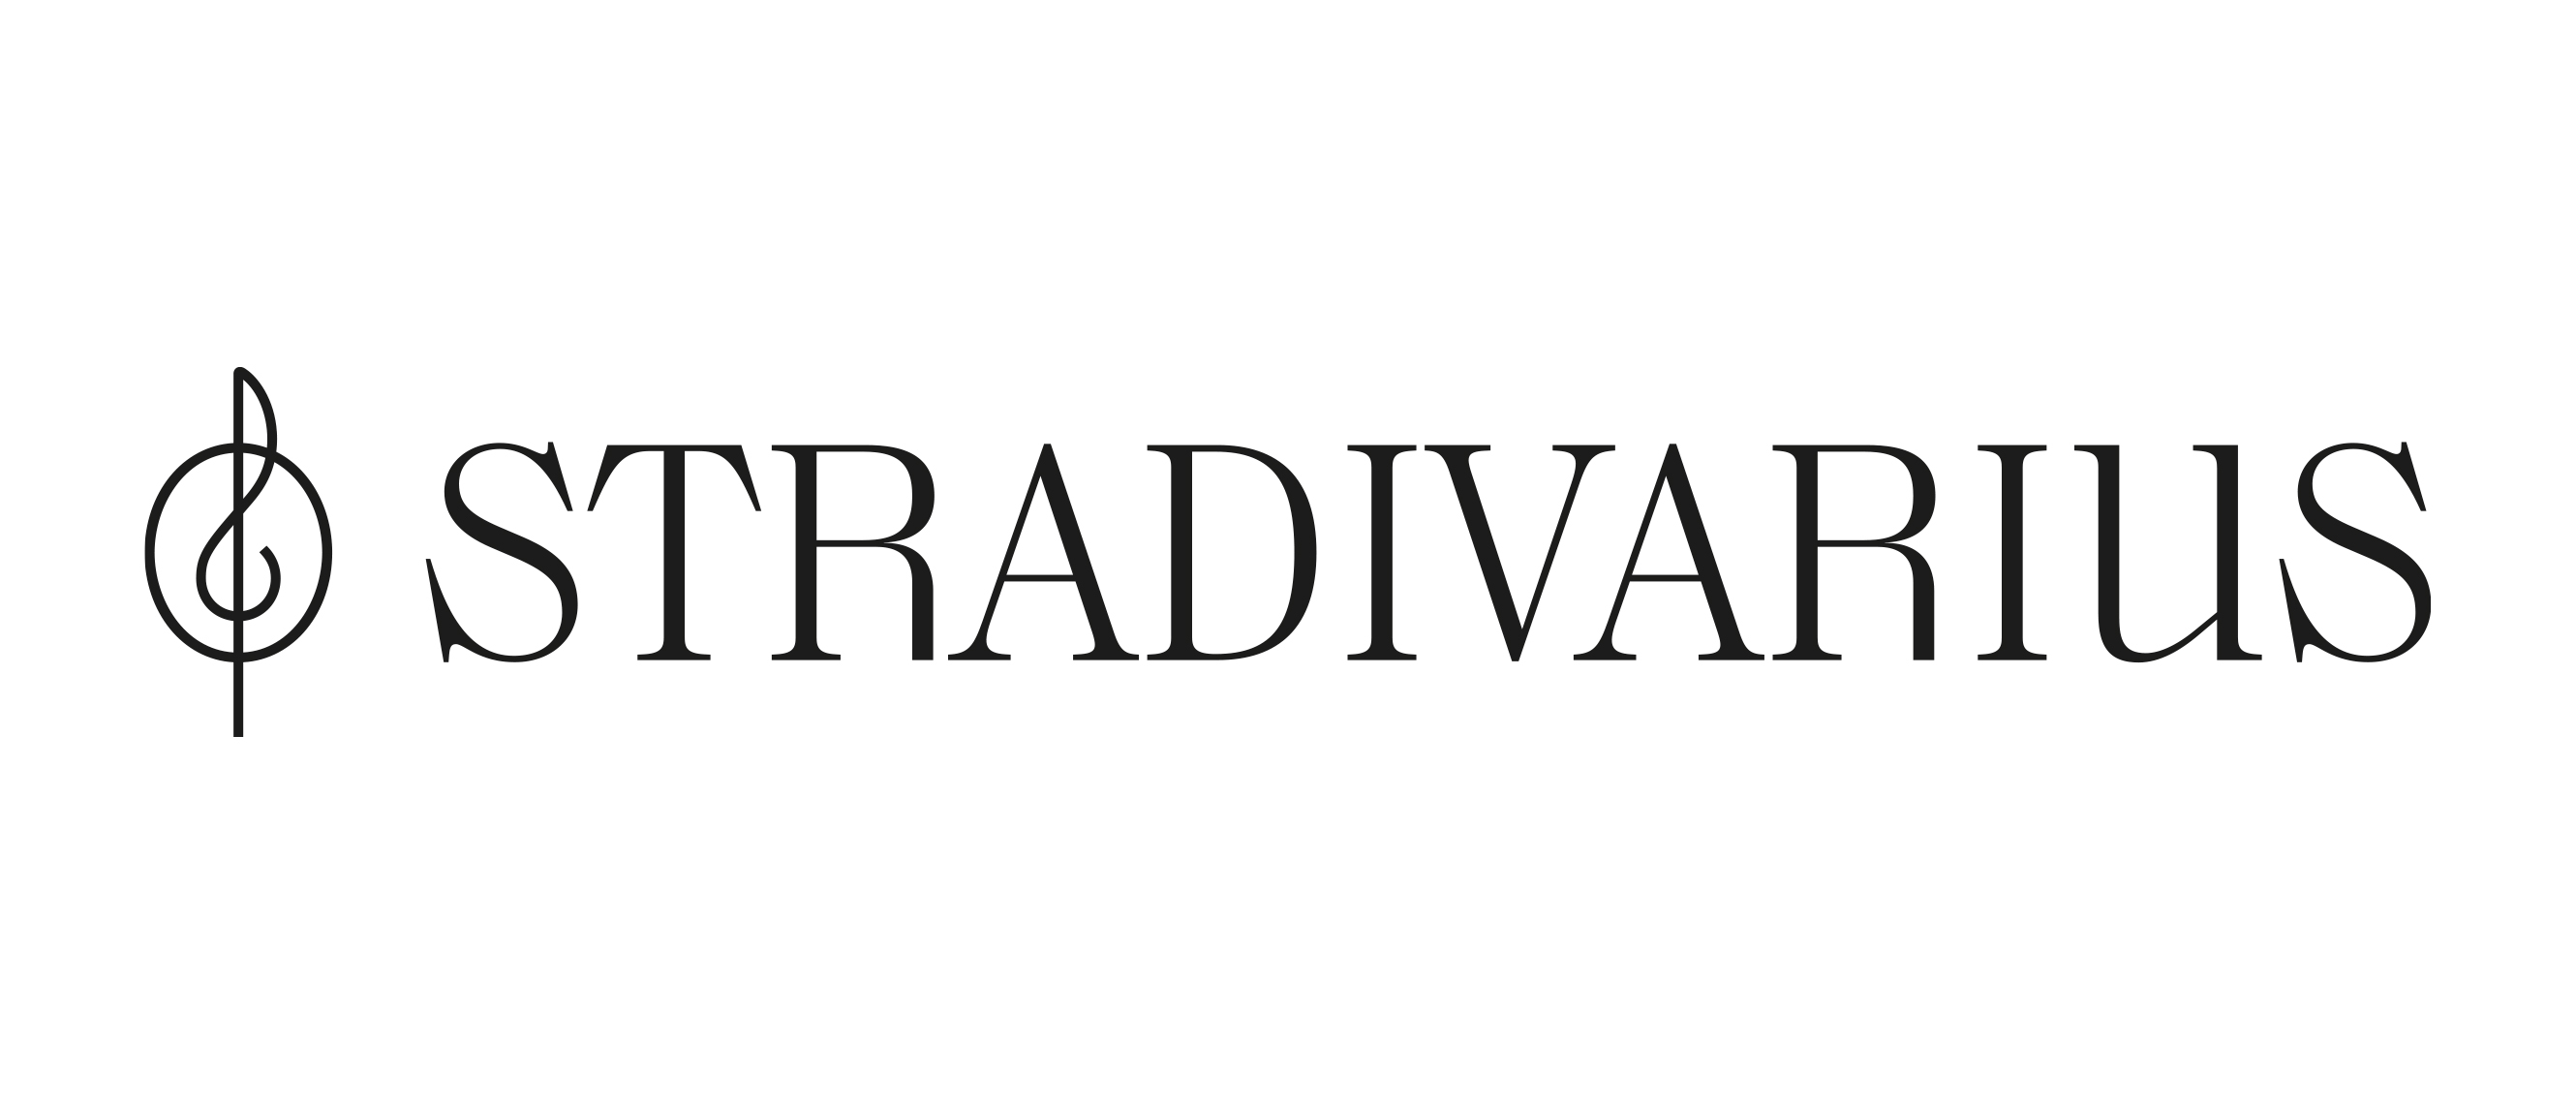 Código Stradivarius